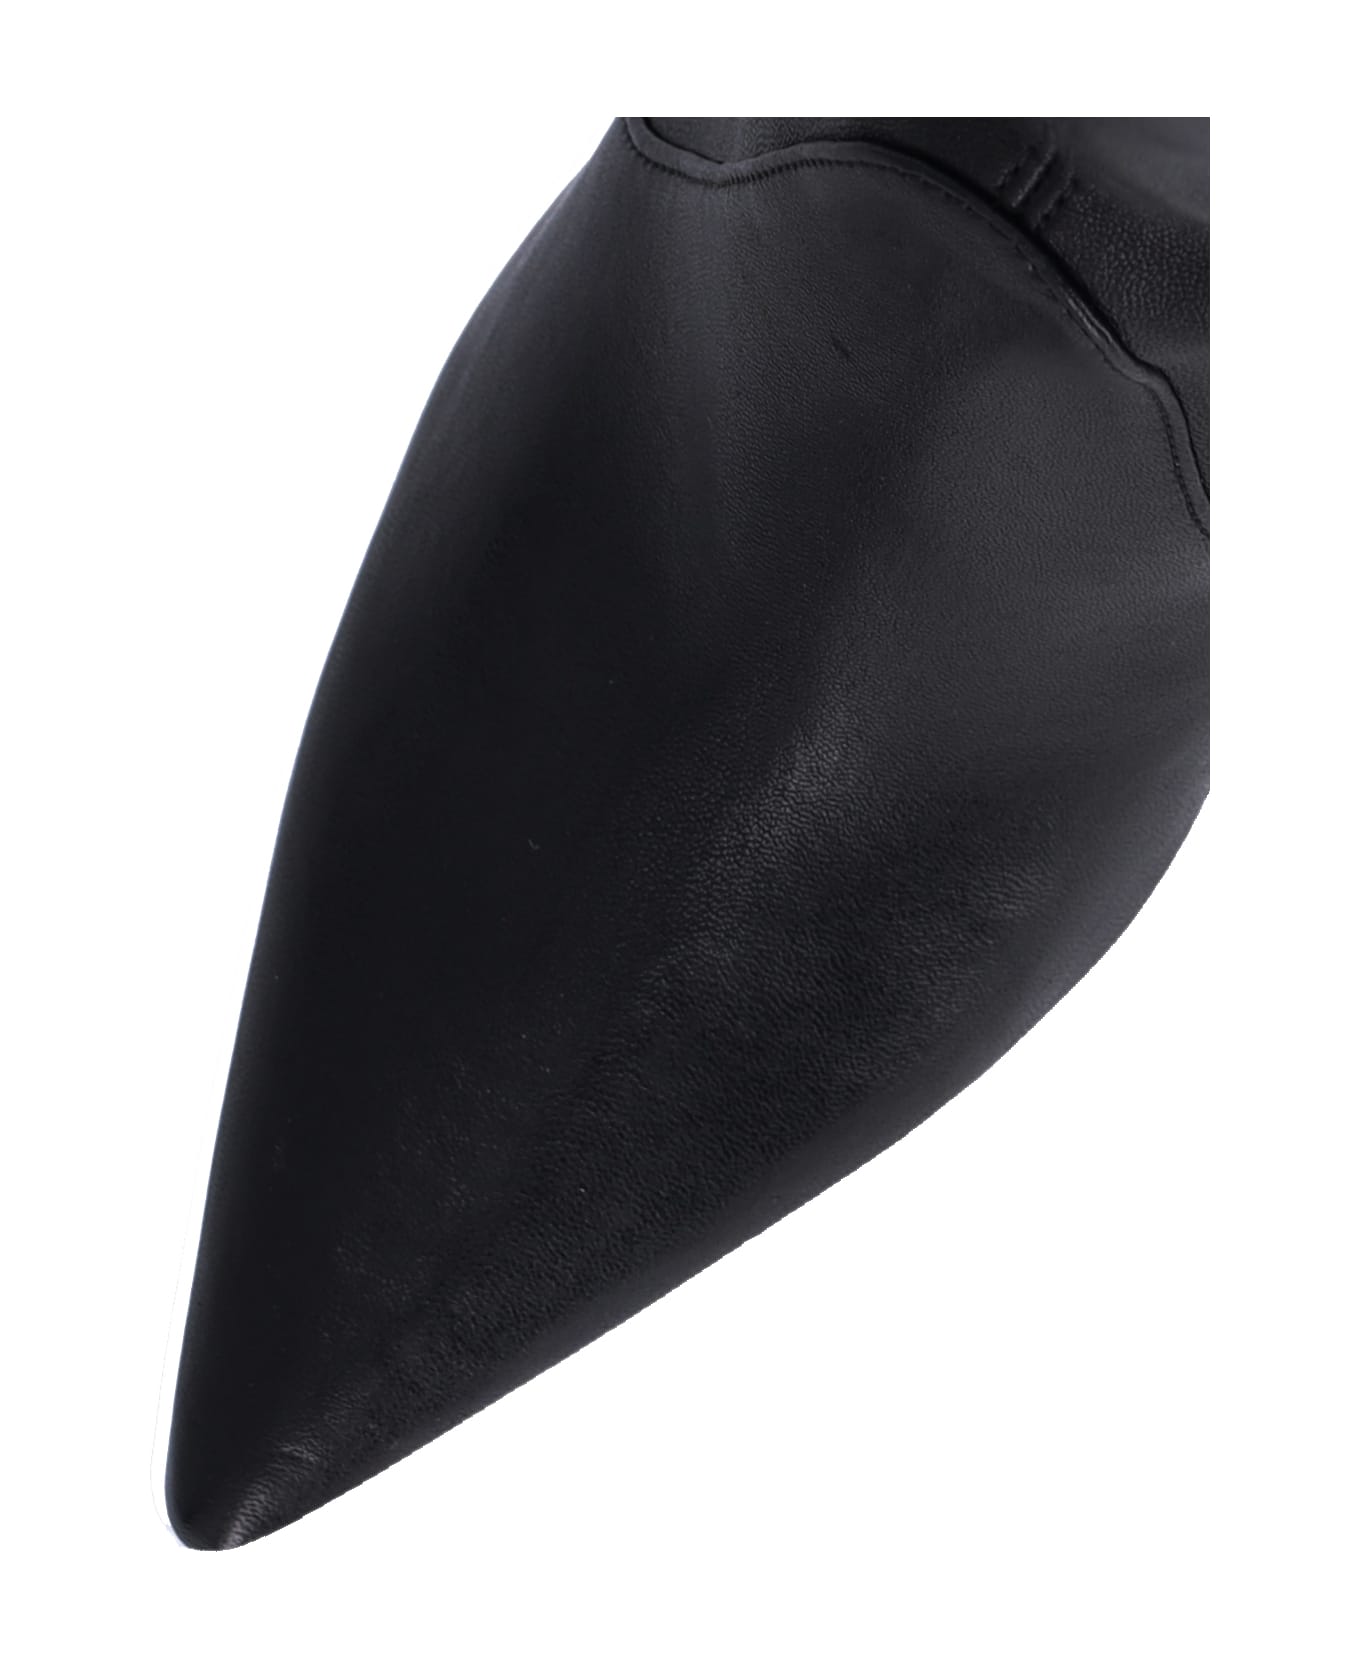 Stuart Weitzman High Boots "ultrastuart" - Black  